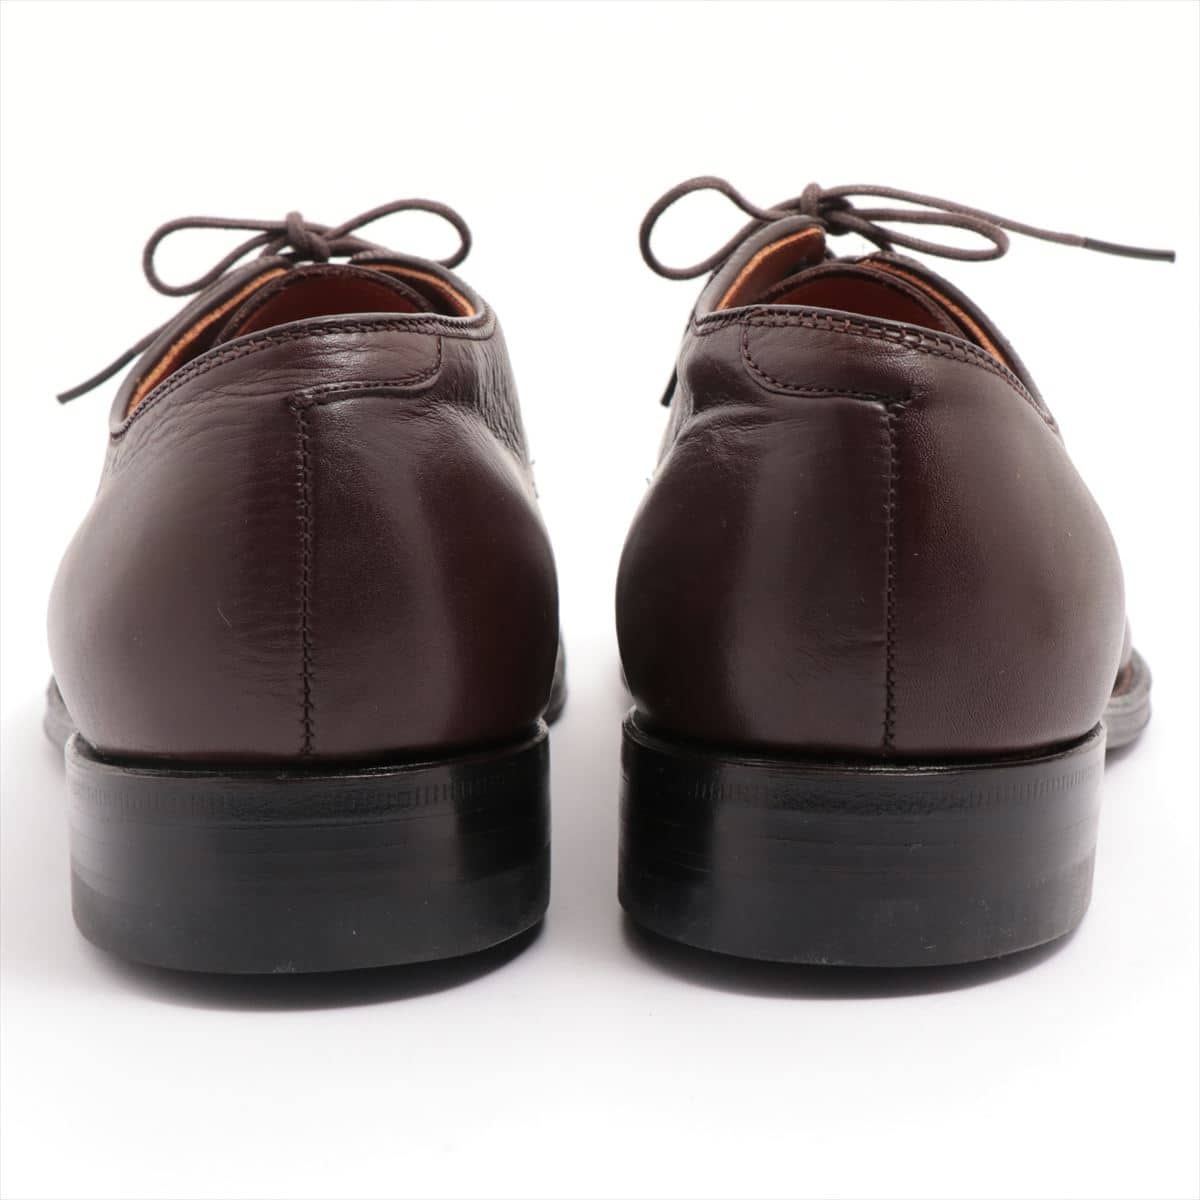 Alden Leather Shoes 7 1/2 Men's Brown plain toe Arrows bespoke